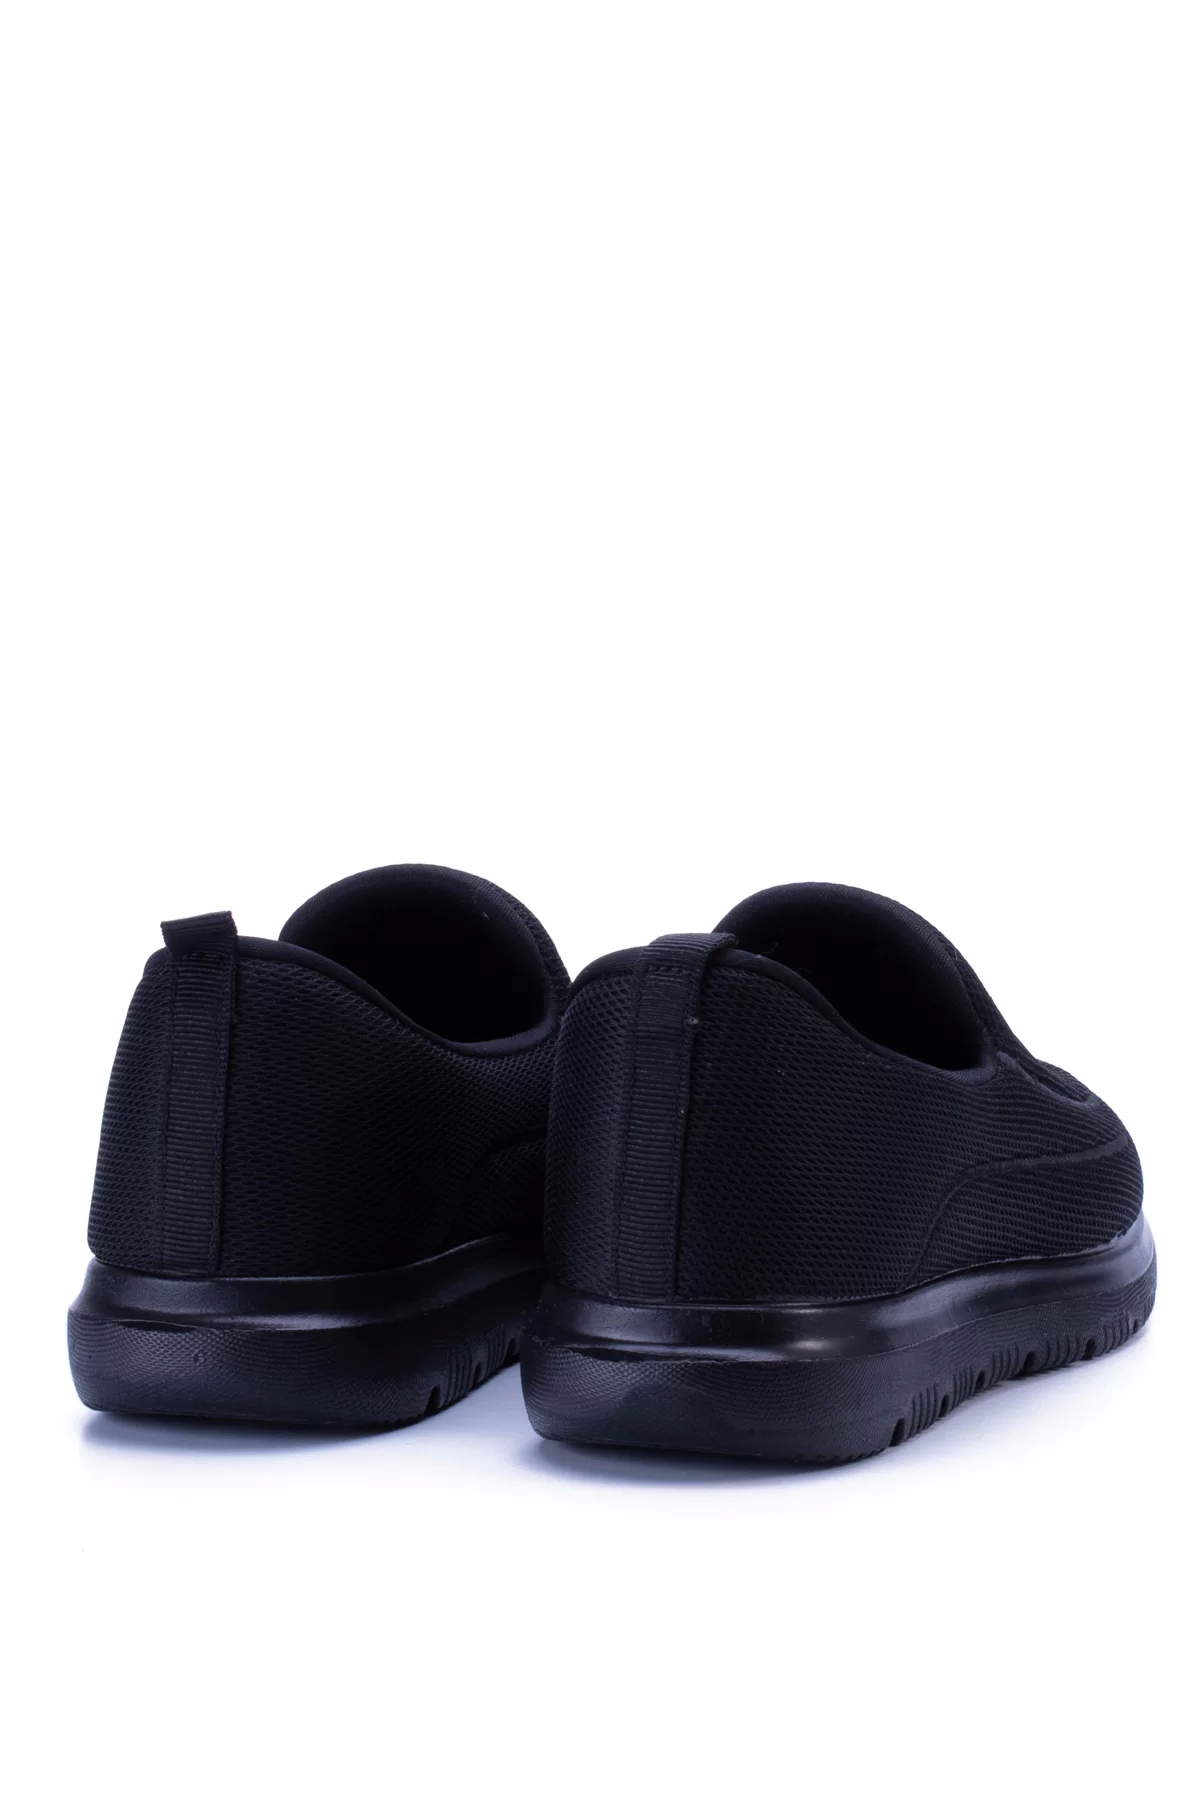 Erkek Faylon Taban Aqua Streç Sneaker 1124 - Siyah